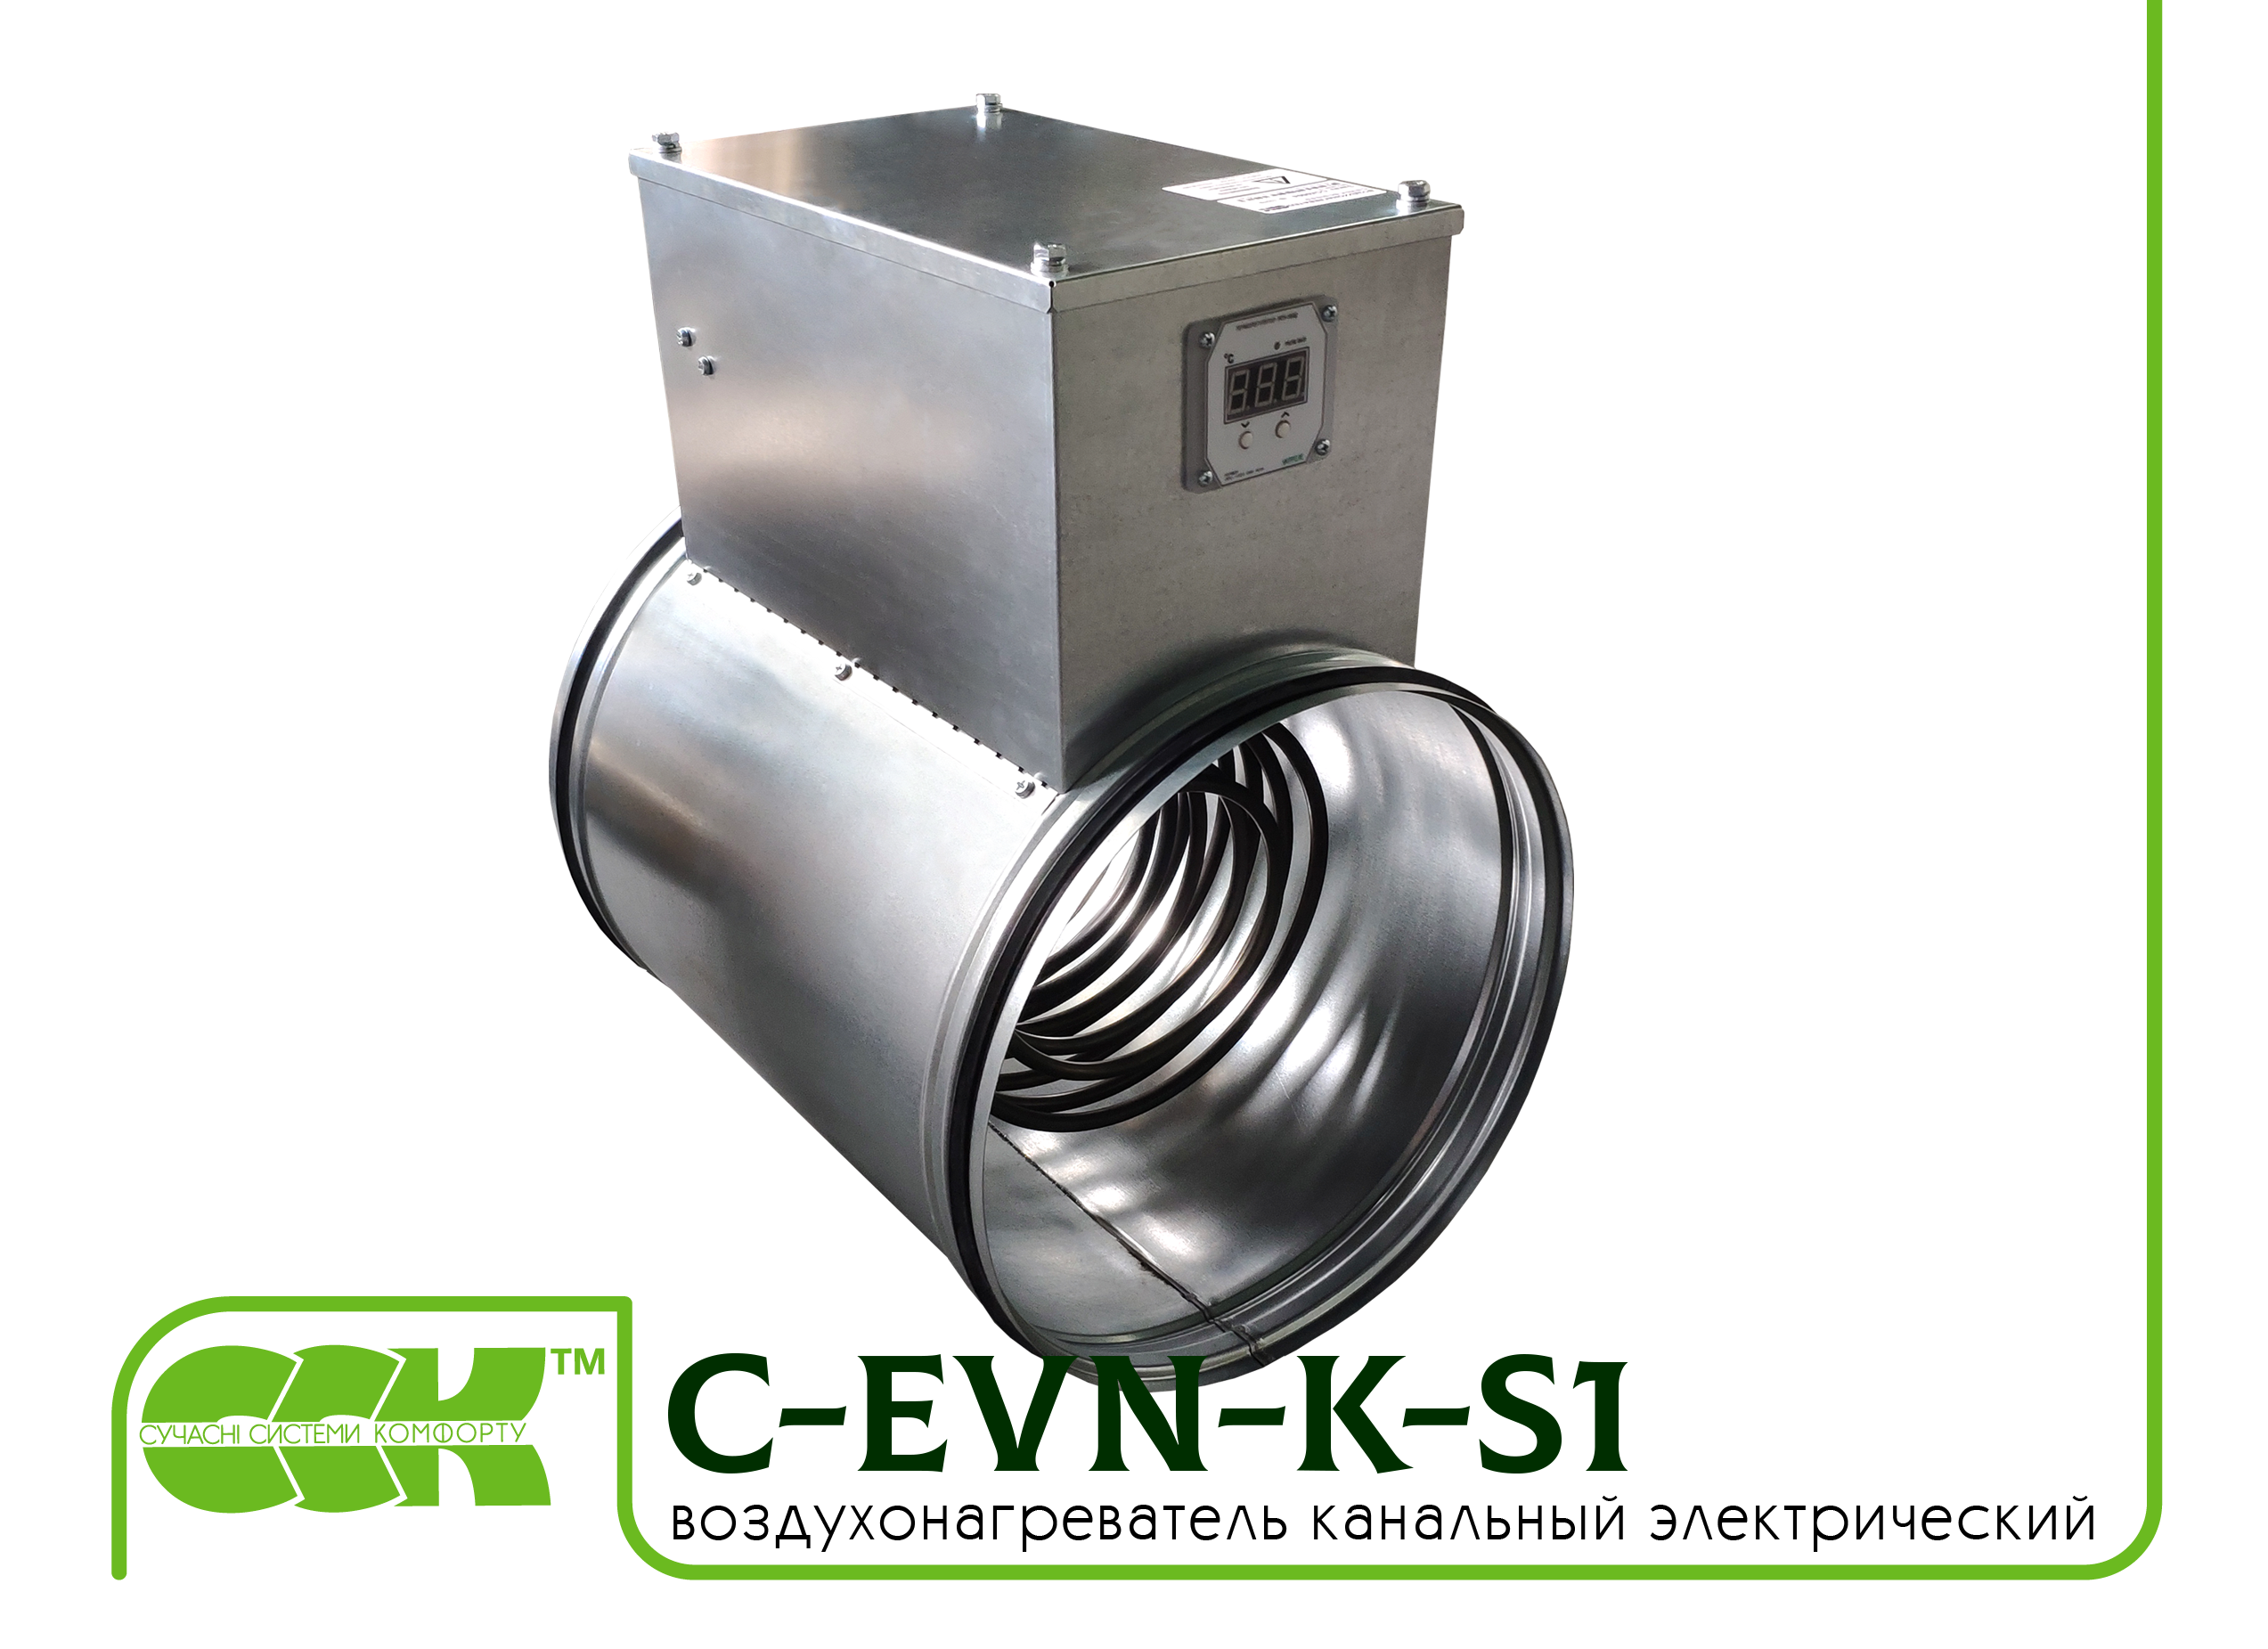 Воздухонагреватель канальный электрический для круглых каналов C-EVN-K-S1-250-3,0